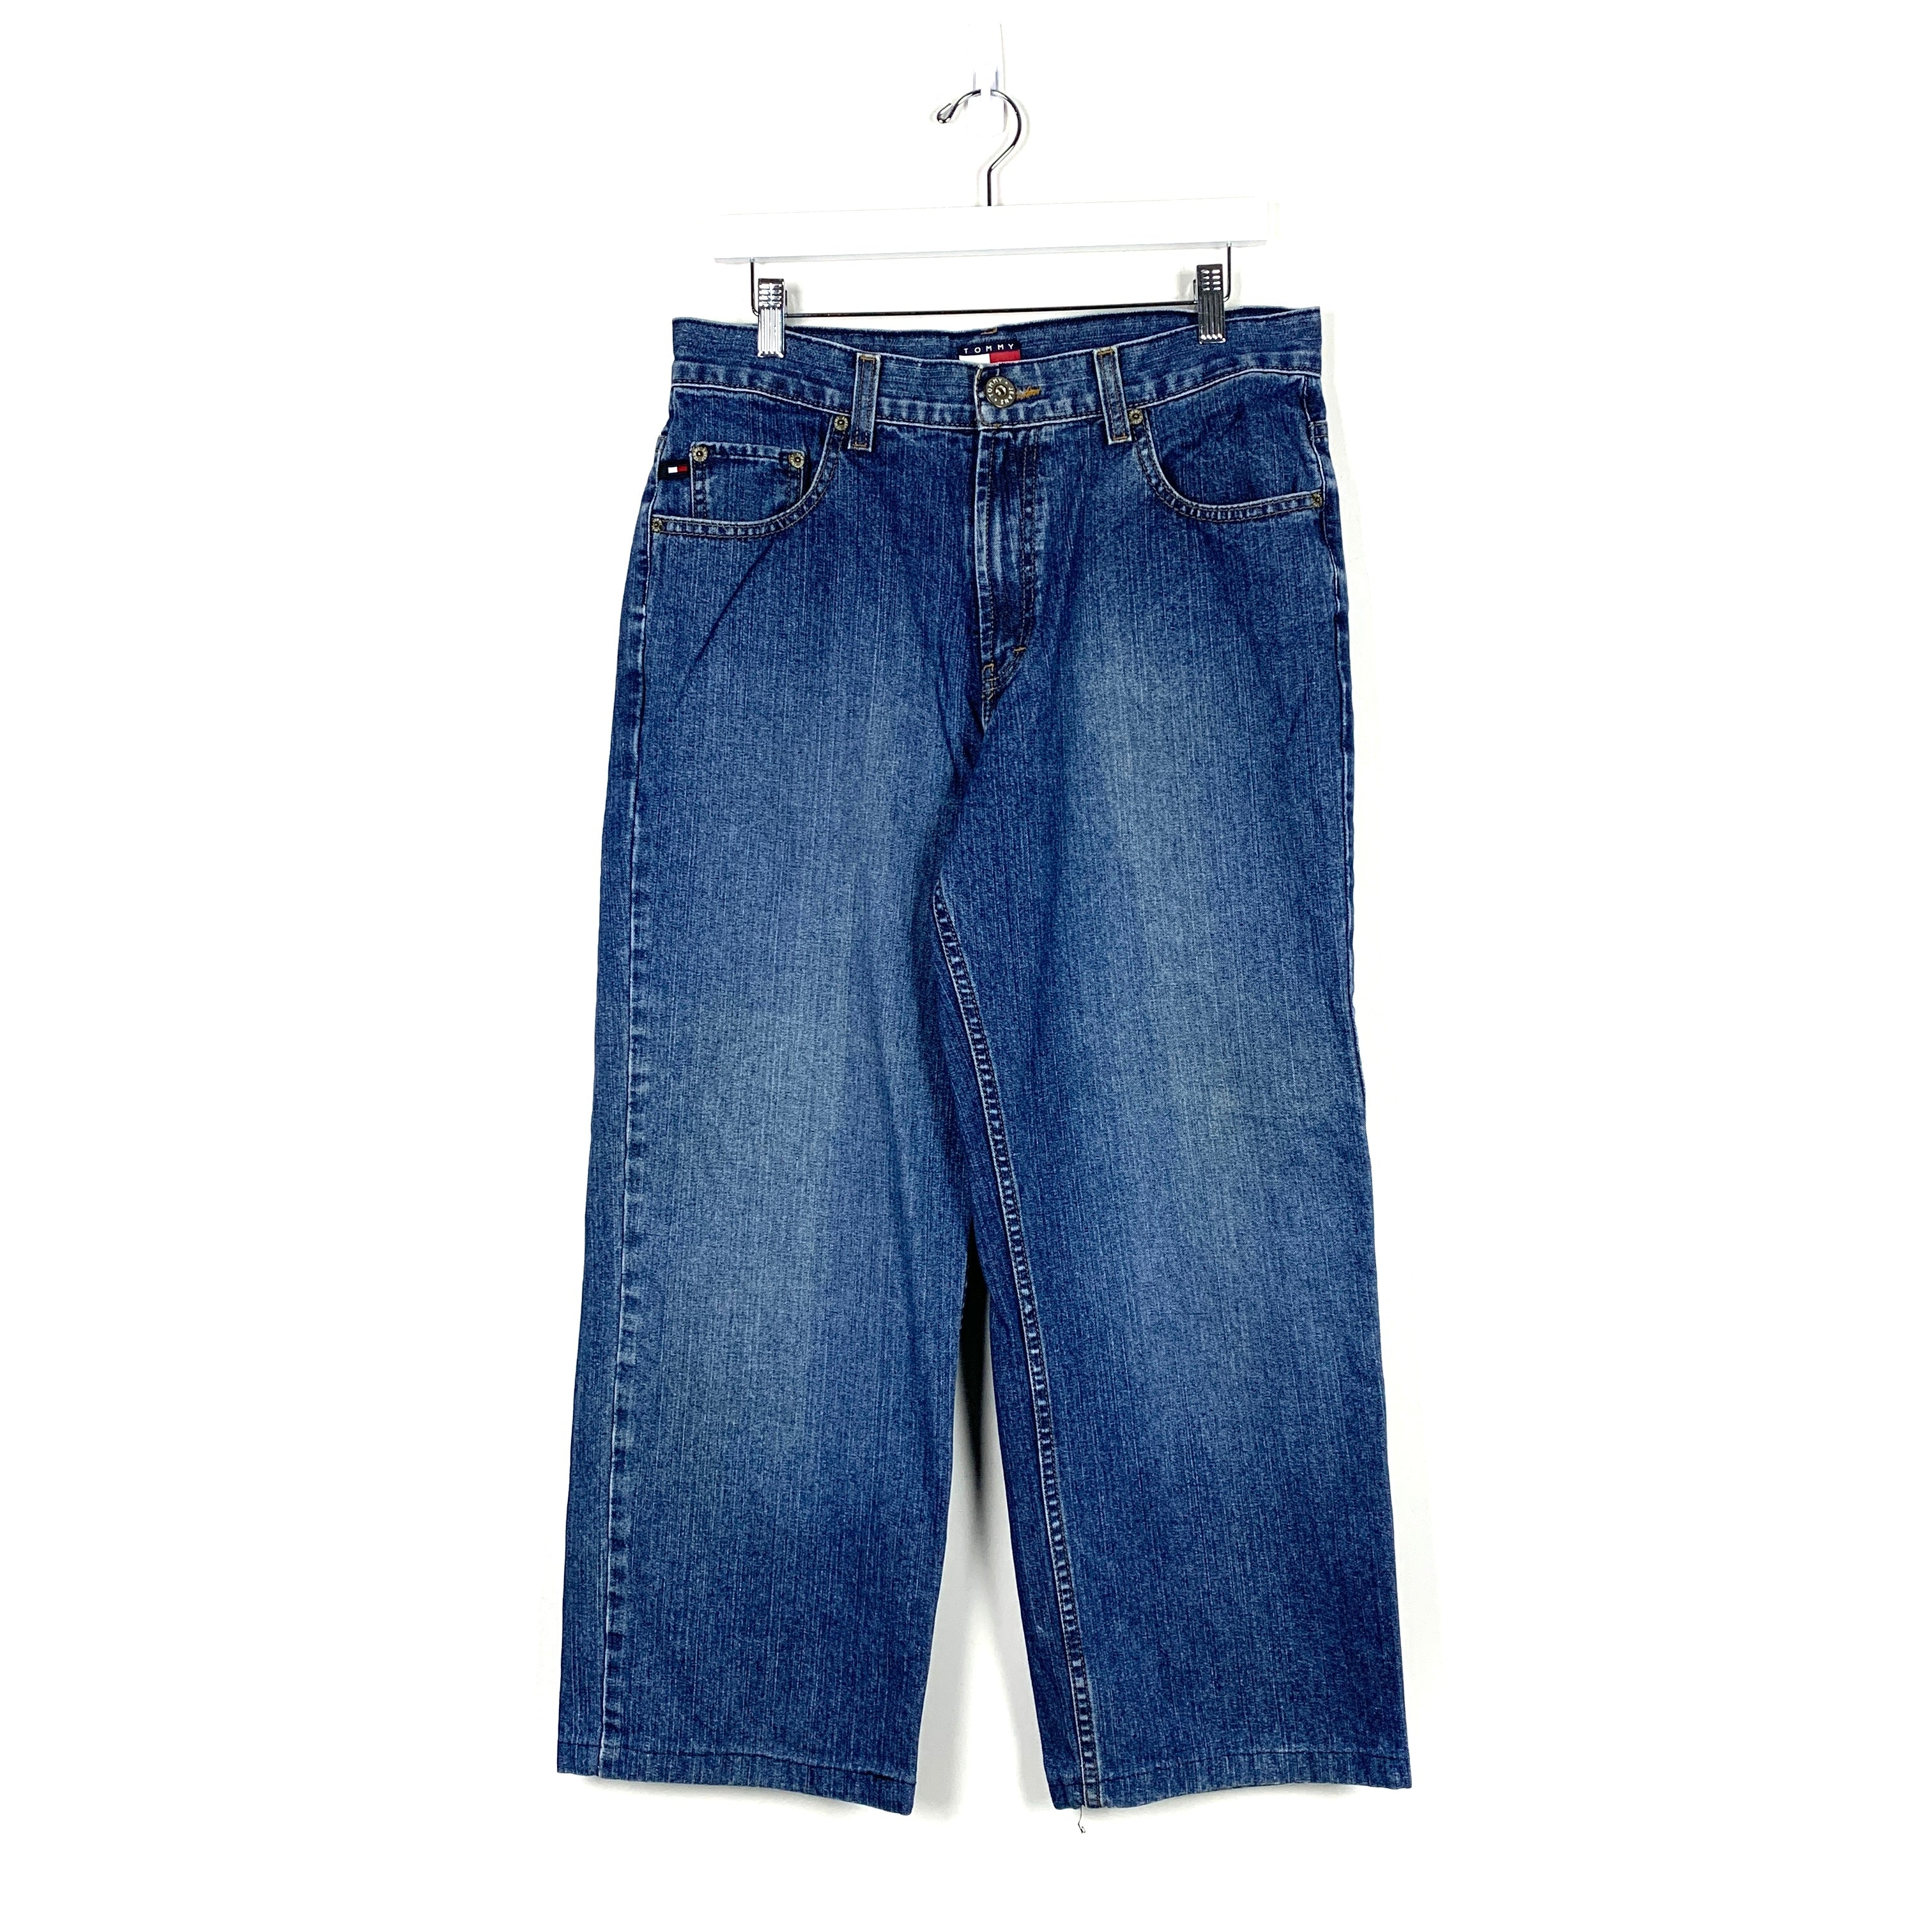 Vintage Tommy Hilfiger Jeans - Men's 32/32